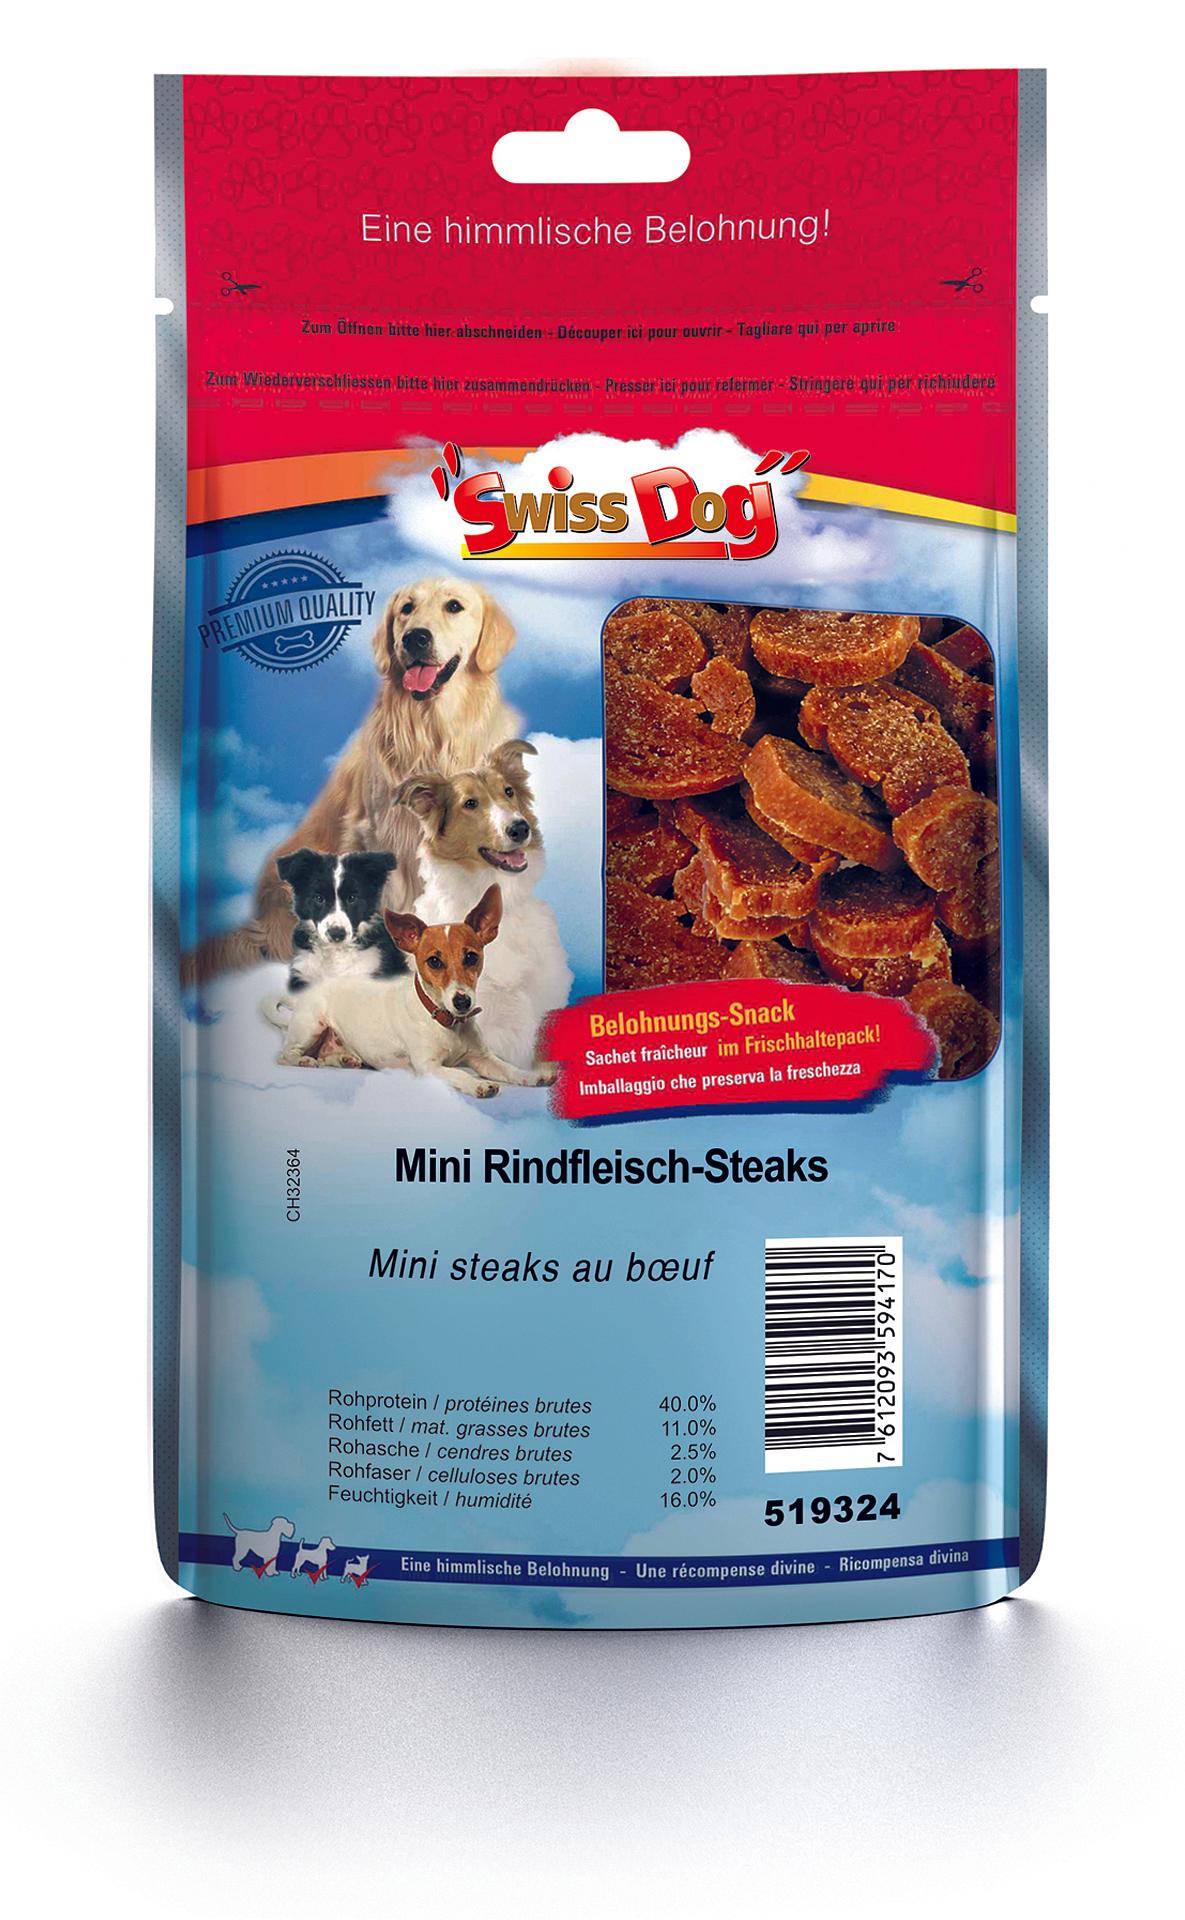 SwissDog Mini RindfleischSteaks bestellen petfriends.ch